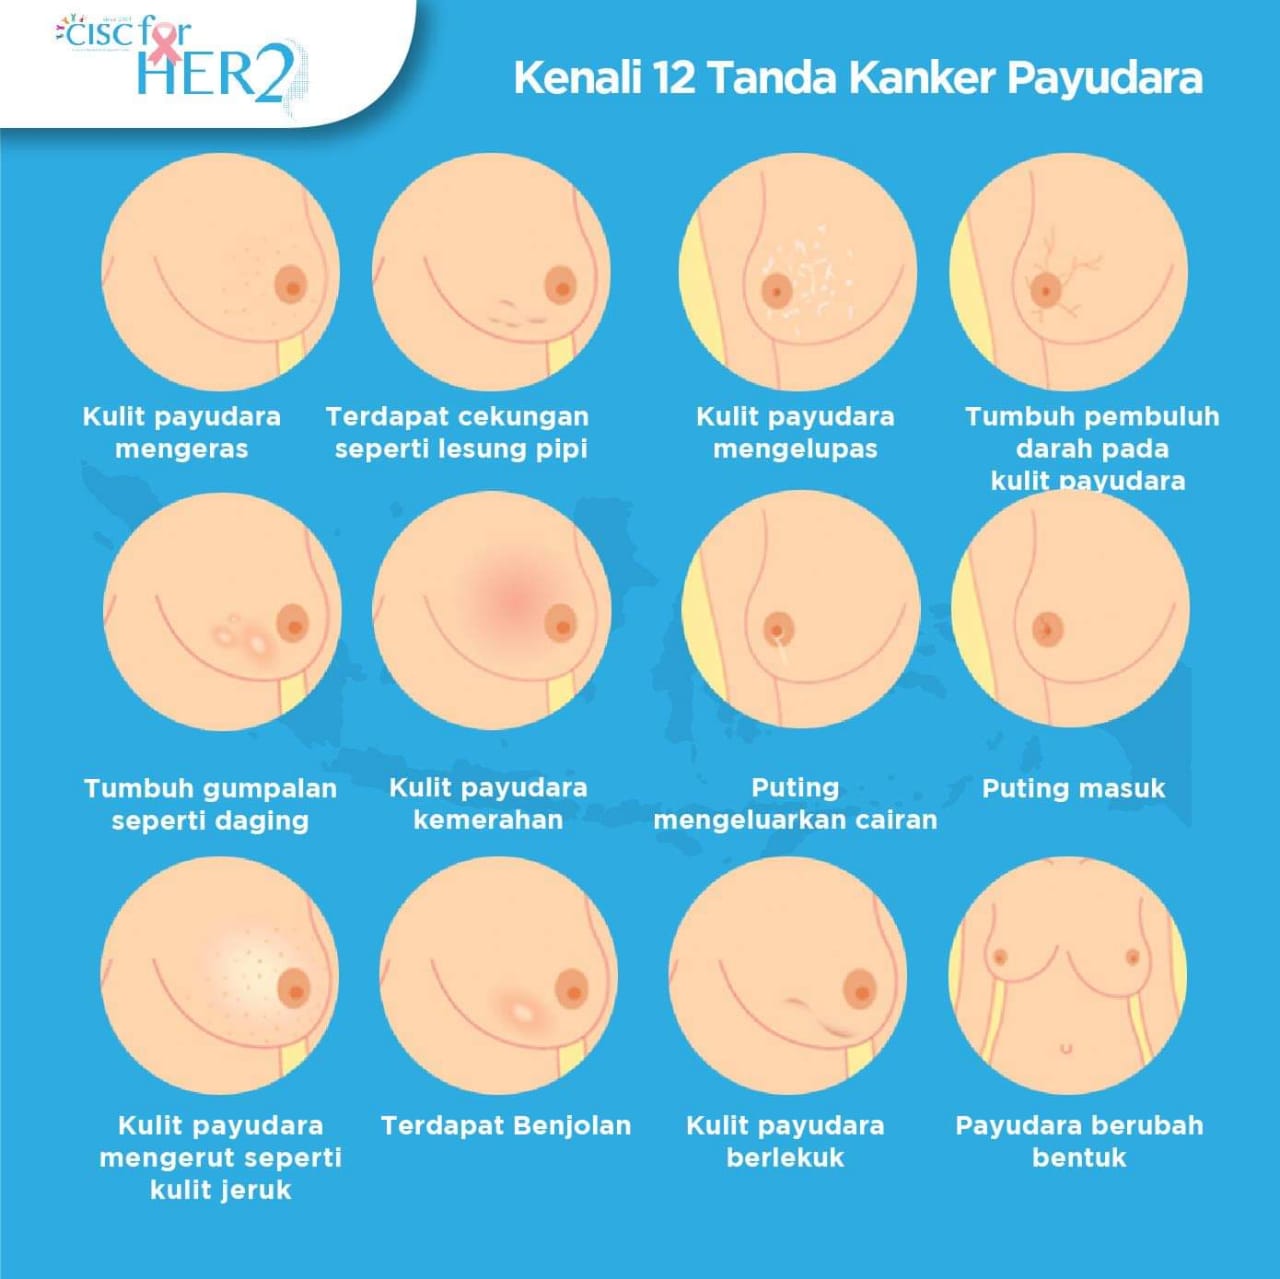 Akses Pelayanan Kesehatan Pasien Kanker Payudara HER2 -Positif di Indonesia  | Kurnia Amelia